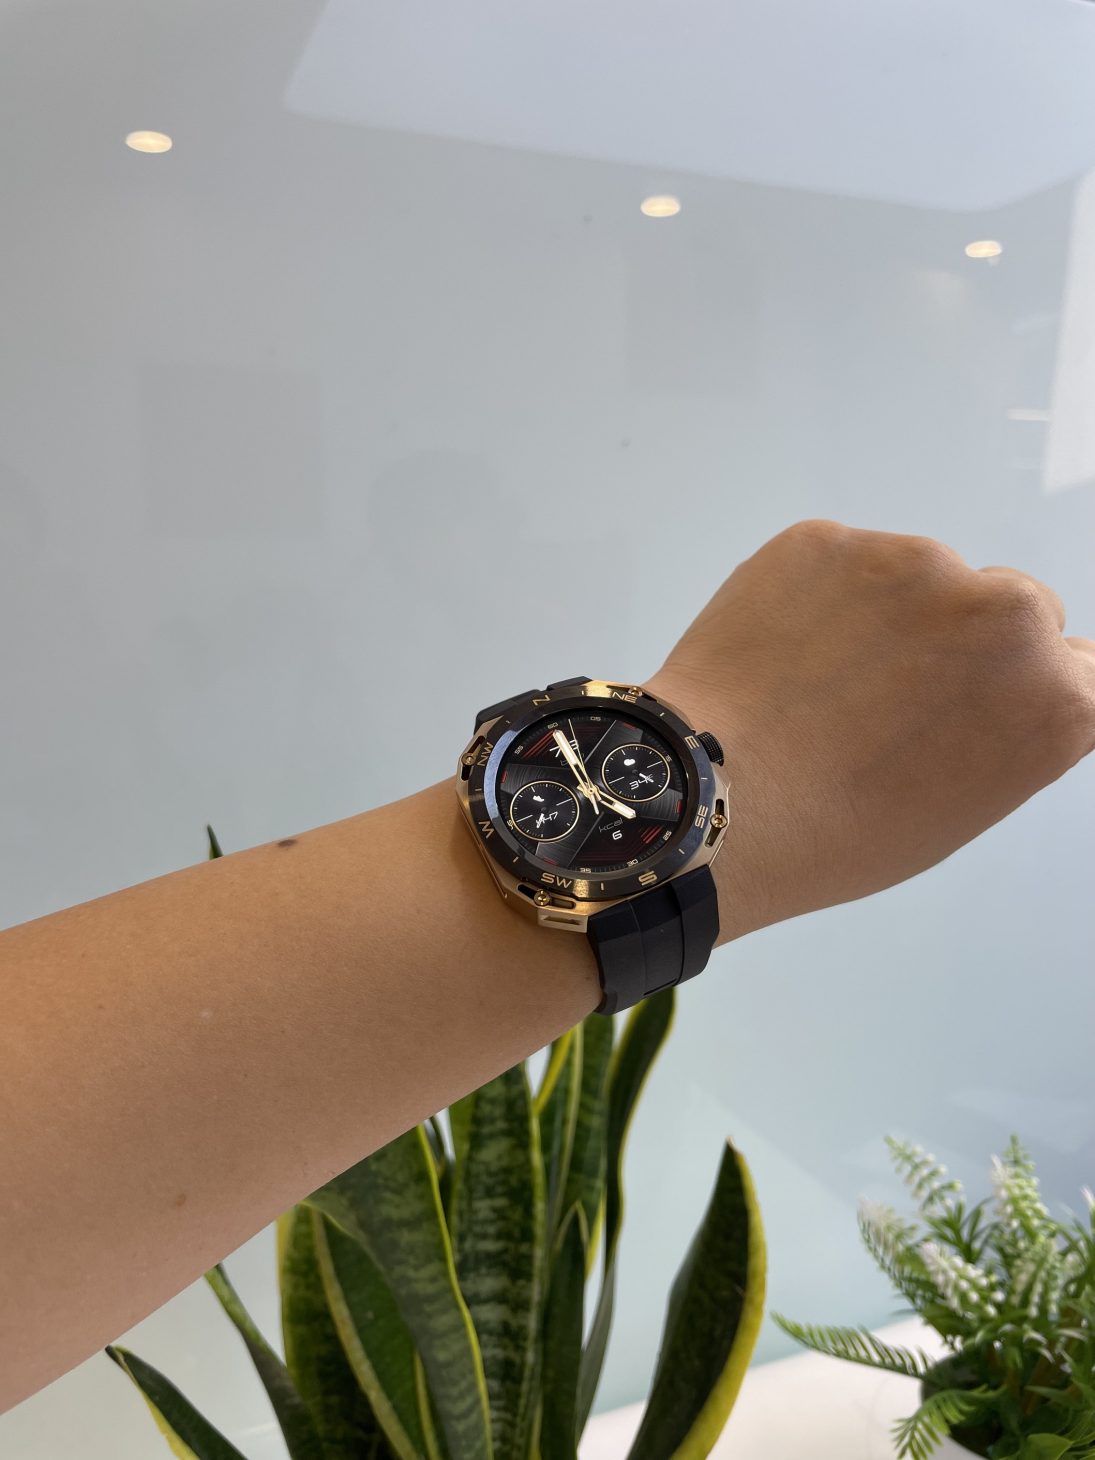 HUAWEI WATCH GT Cyber, thêm một đồng hồ thông minh chất từ Huawei - IMG 4056